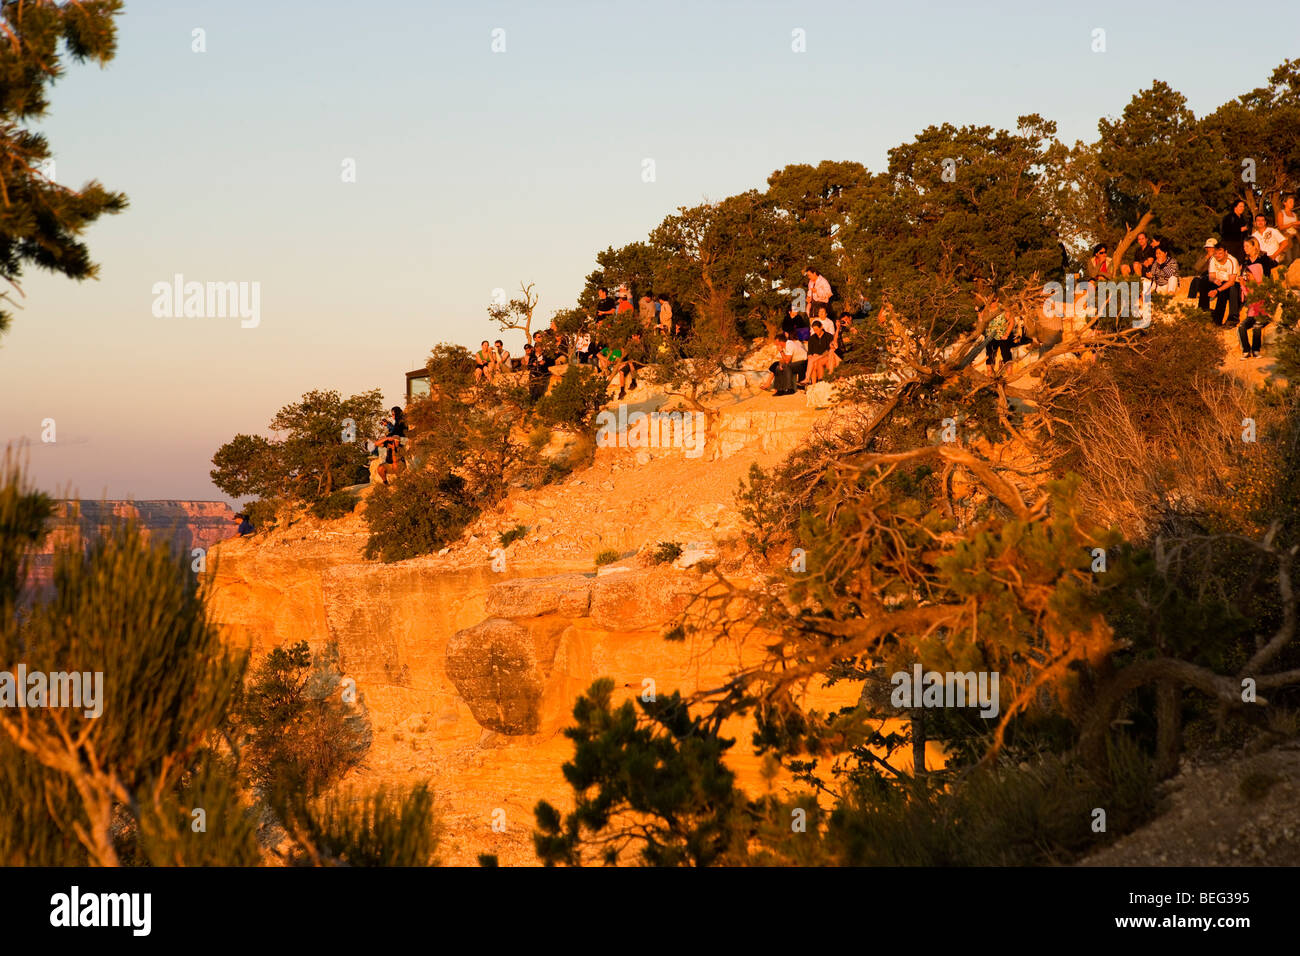 Tourists await sunset at an overlook at the Grand Canyon, Arizona Stock Photo